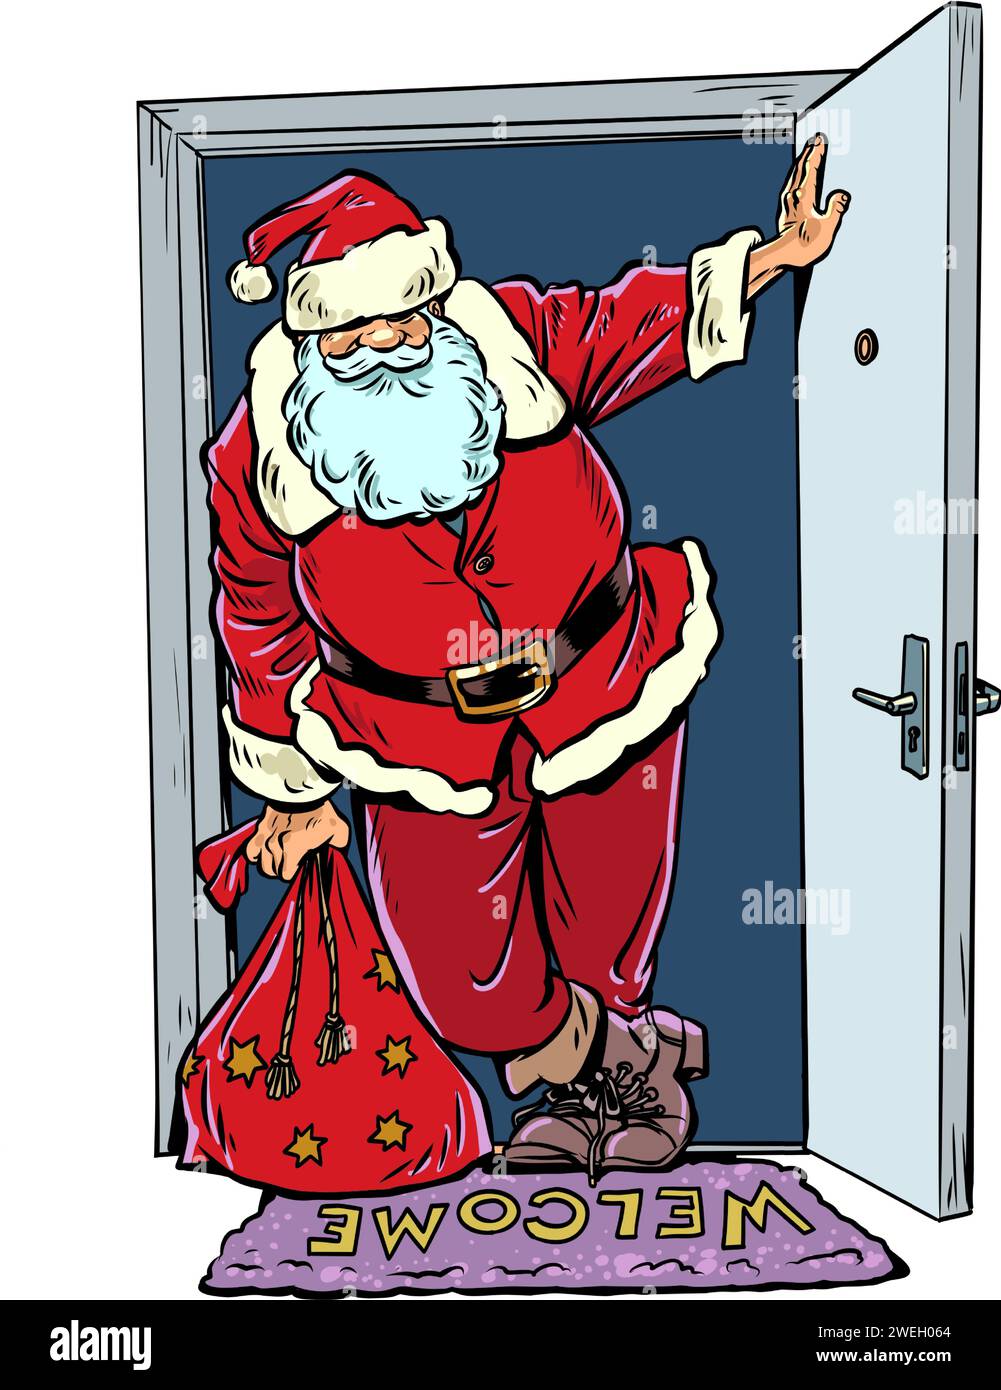 Le prochain Noël arrive dans la maison. Le Père Noël ouvrit la porte respirante de la tempête de neige. Réveillon du nouvel an et livraison de cadeaux partout Illustration de Vecteur